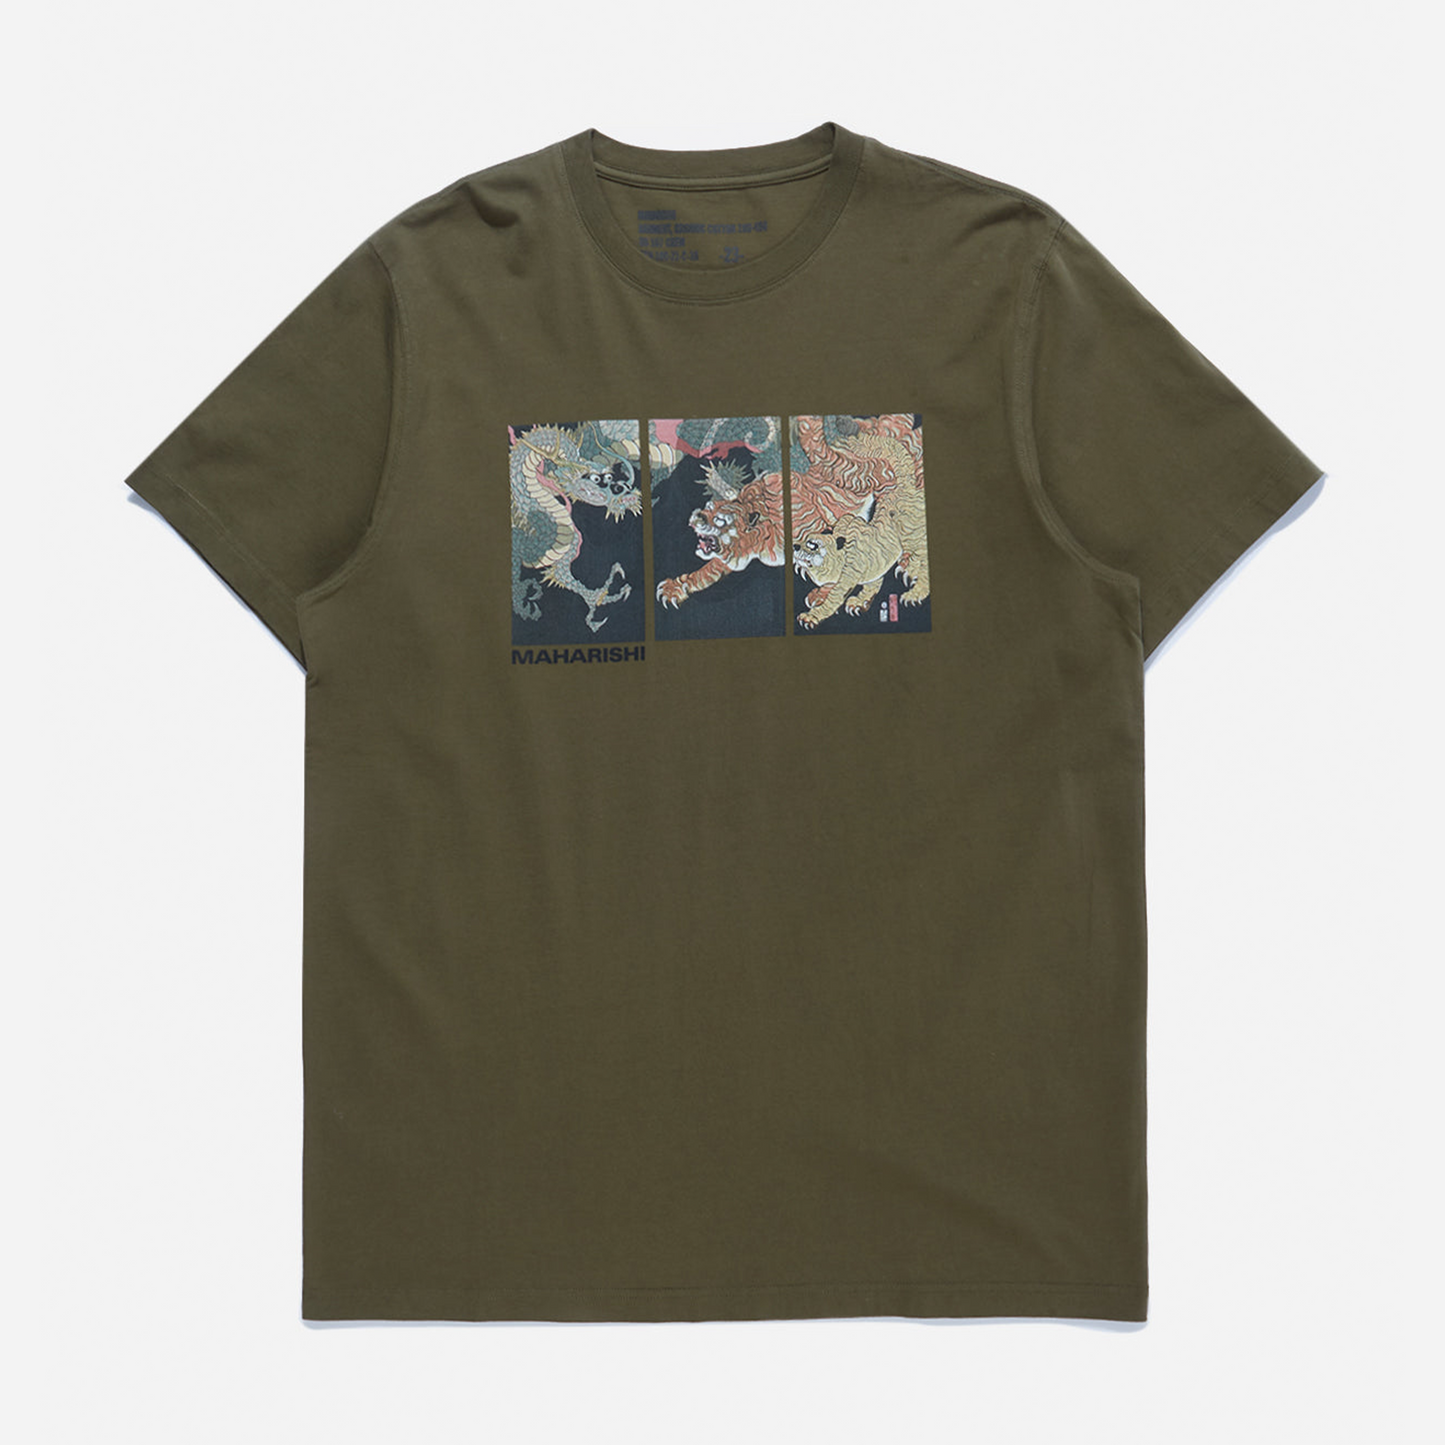 Maharishi Dragon & Tigers T-Shirt